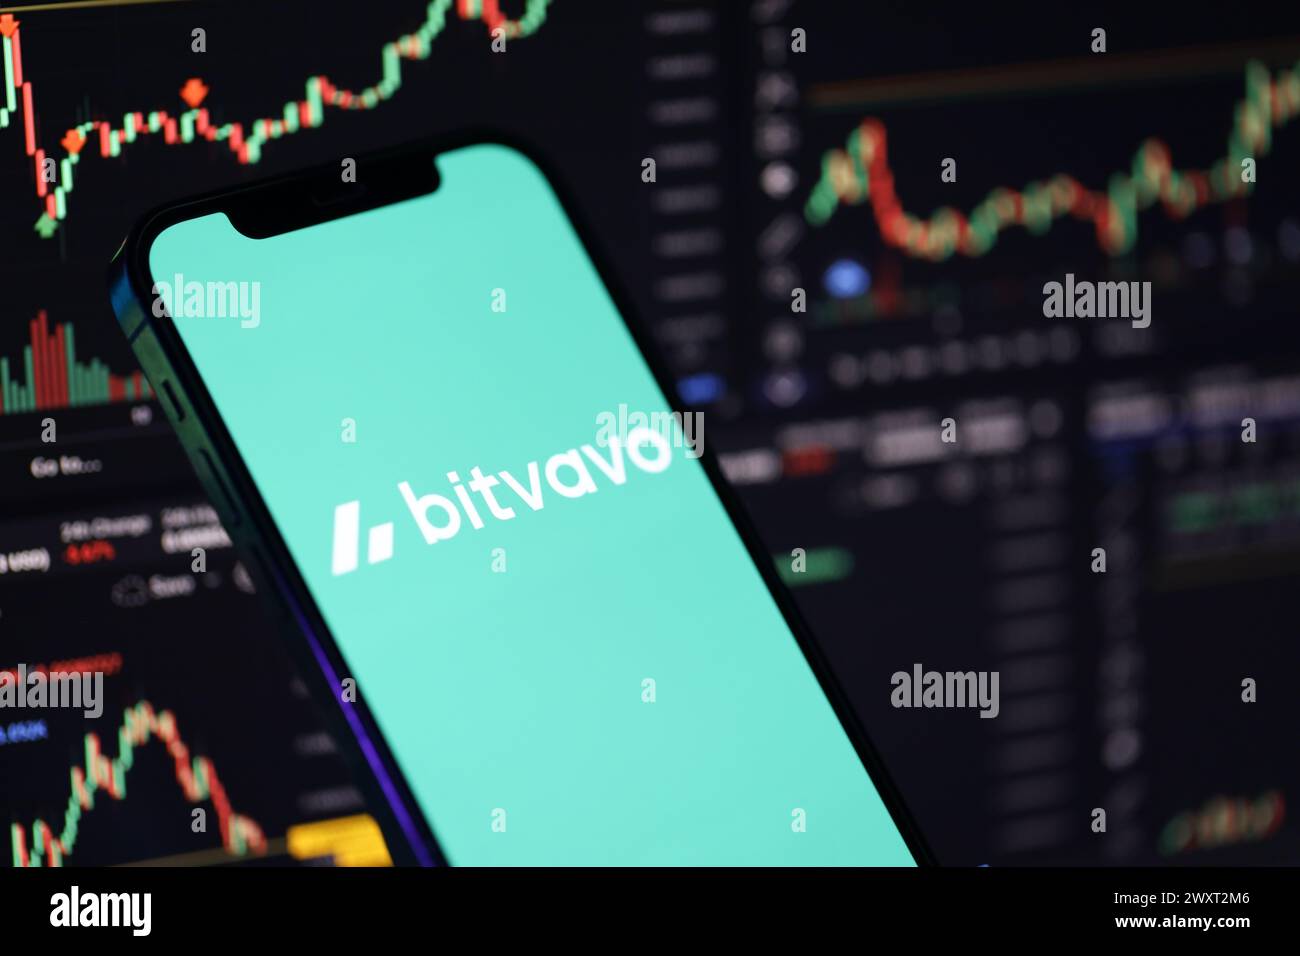 KIEW, UKRAINE - 15. MÄRZ 2024 Bitvavo-Logo auf dem iPhone-Display und Kryptowährungswertdiagrammen. Portal für den Austausch von Kryptowährungen Stockfoto